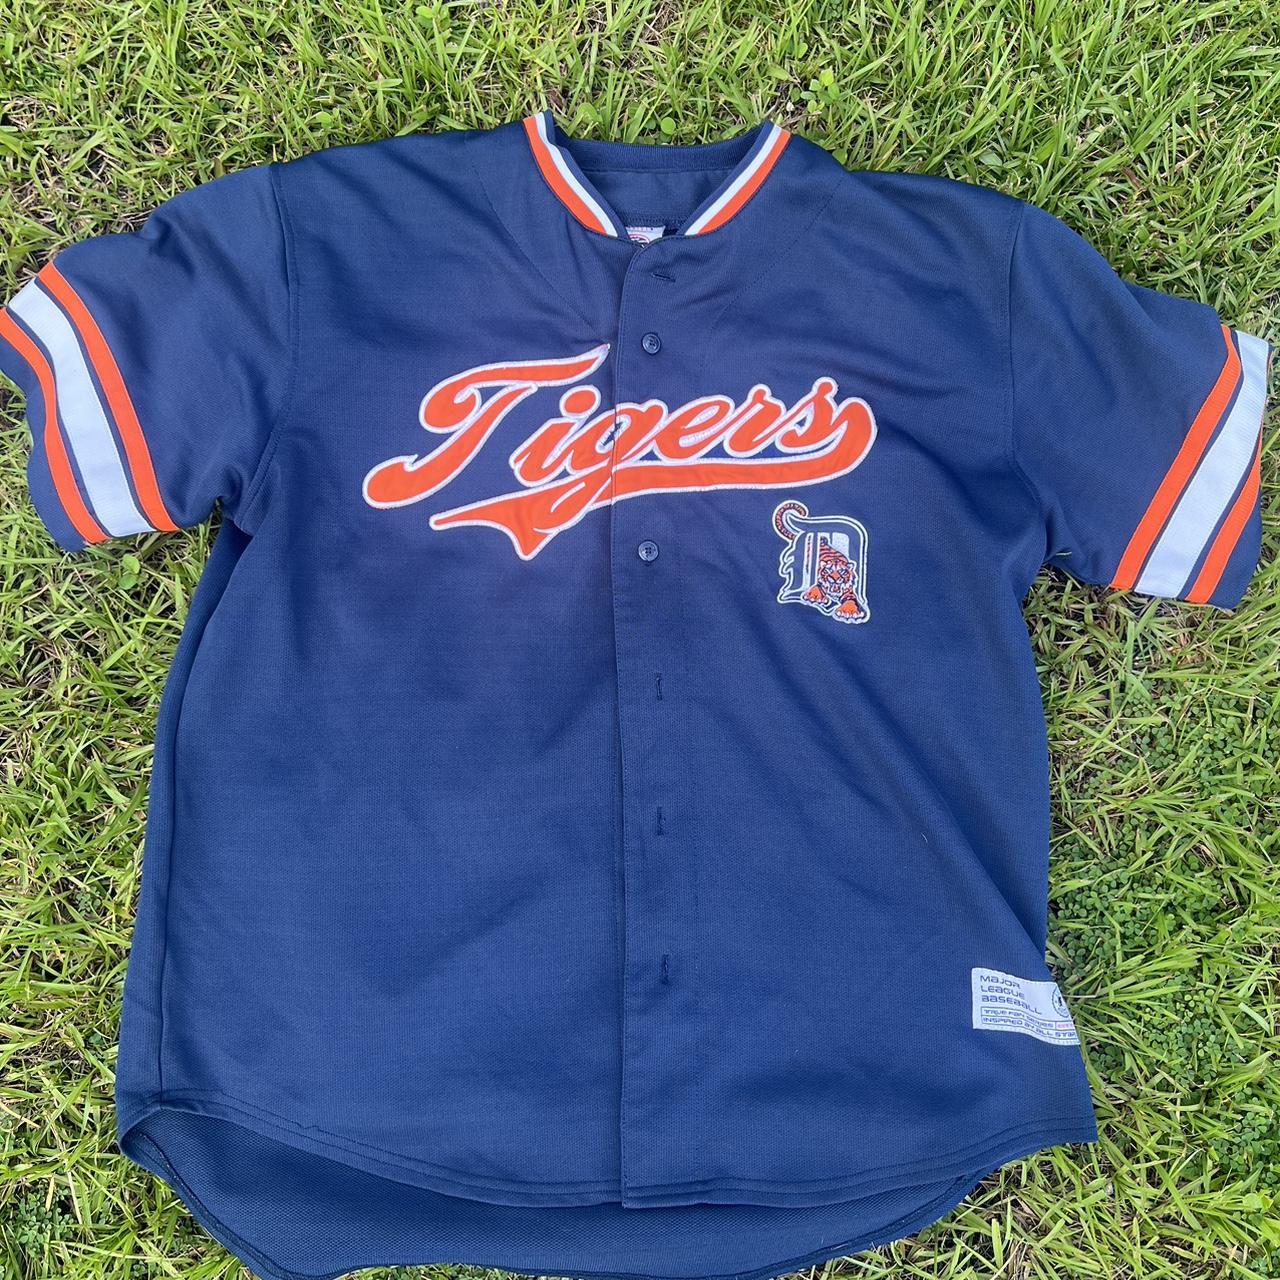 Vintage Detroit Tigers Official Jersey - Genuine - Depop